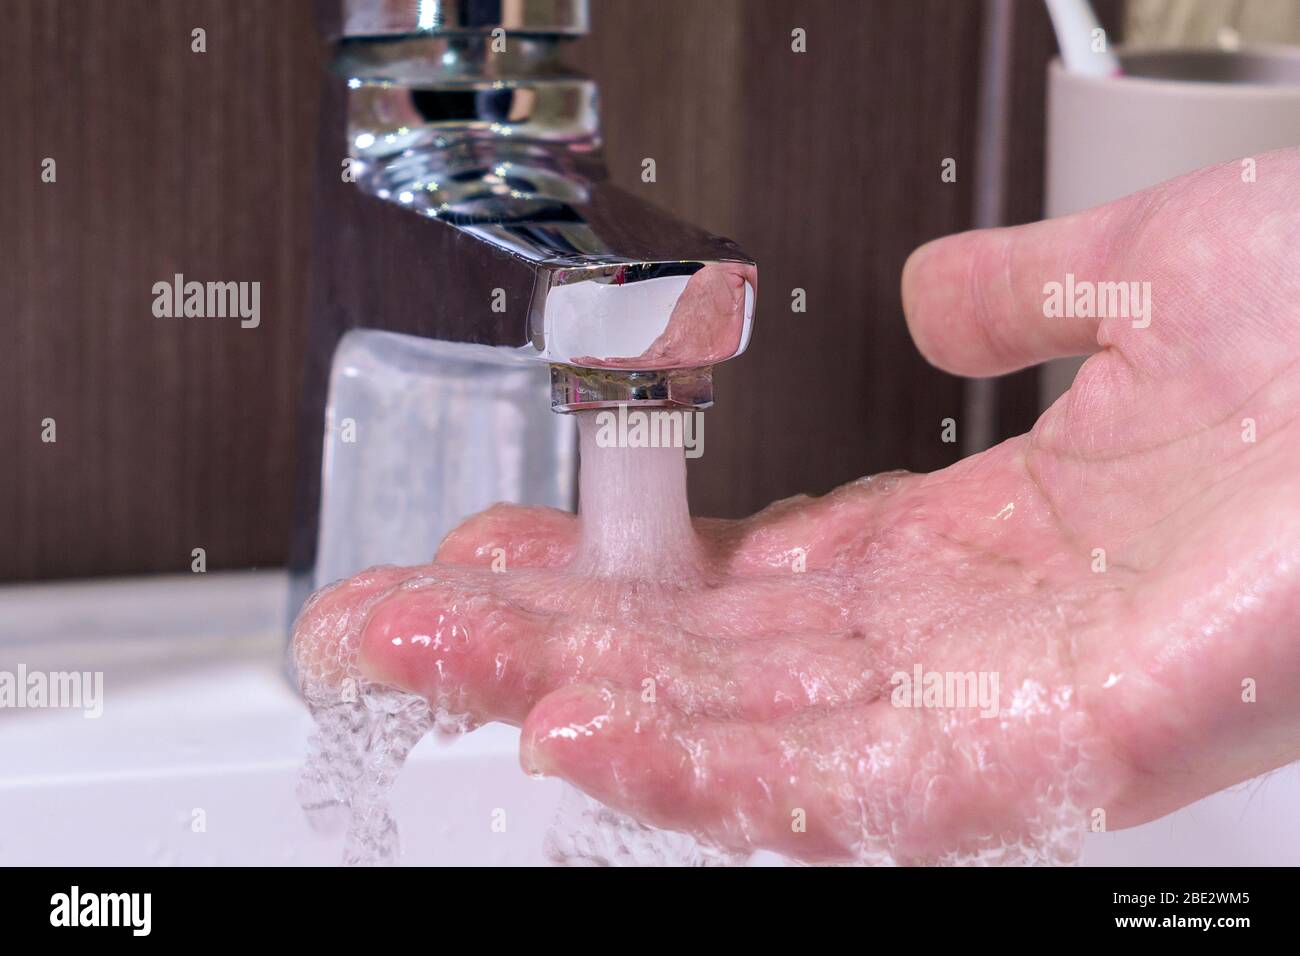 contrôle de la température en touchant l'eau courante avec la main. Gros  plan sur les doigts sous l'eau chaude du robinet ou de la baignoire dans la  salle de bains A Photo